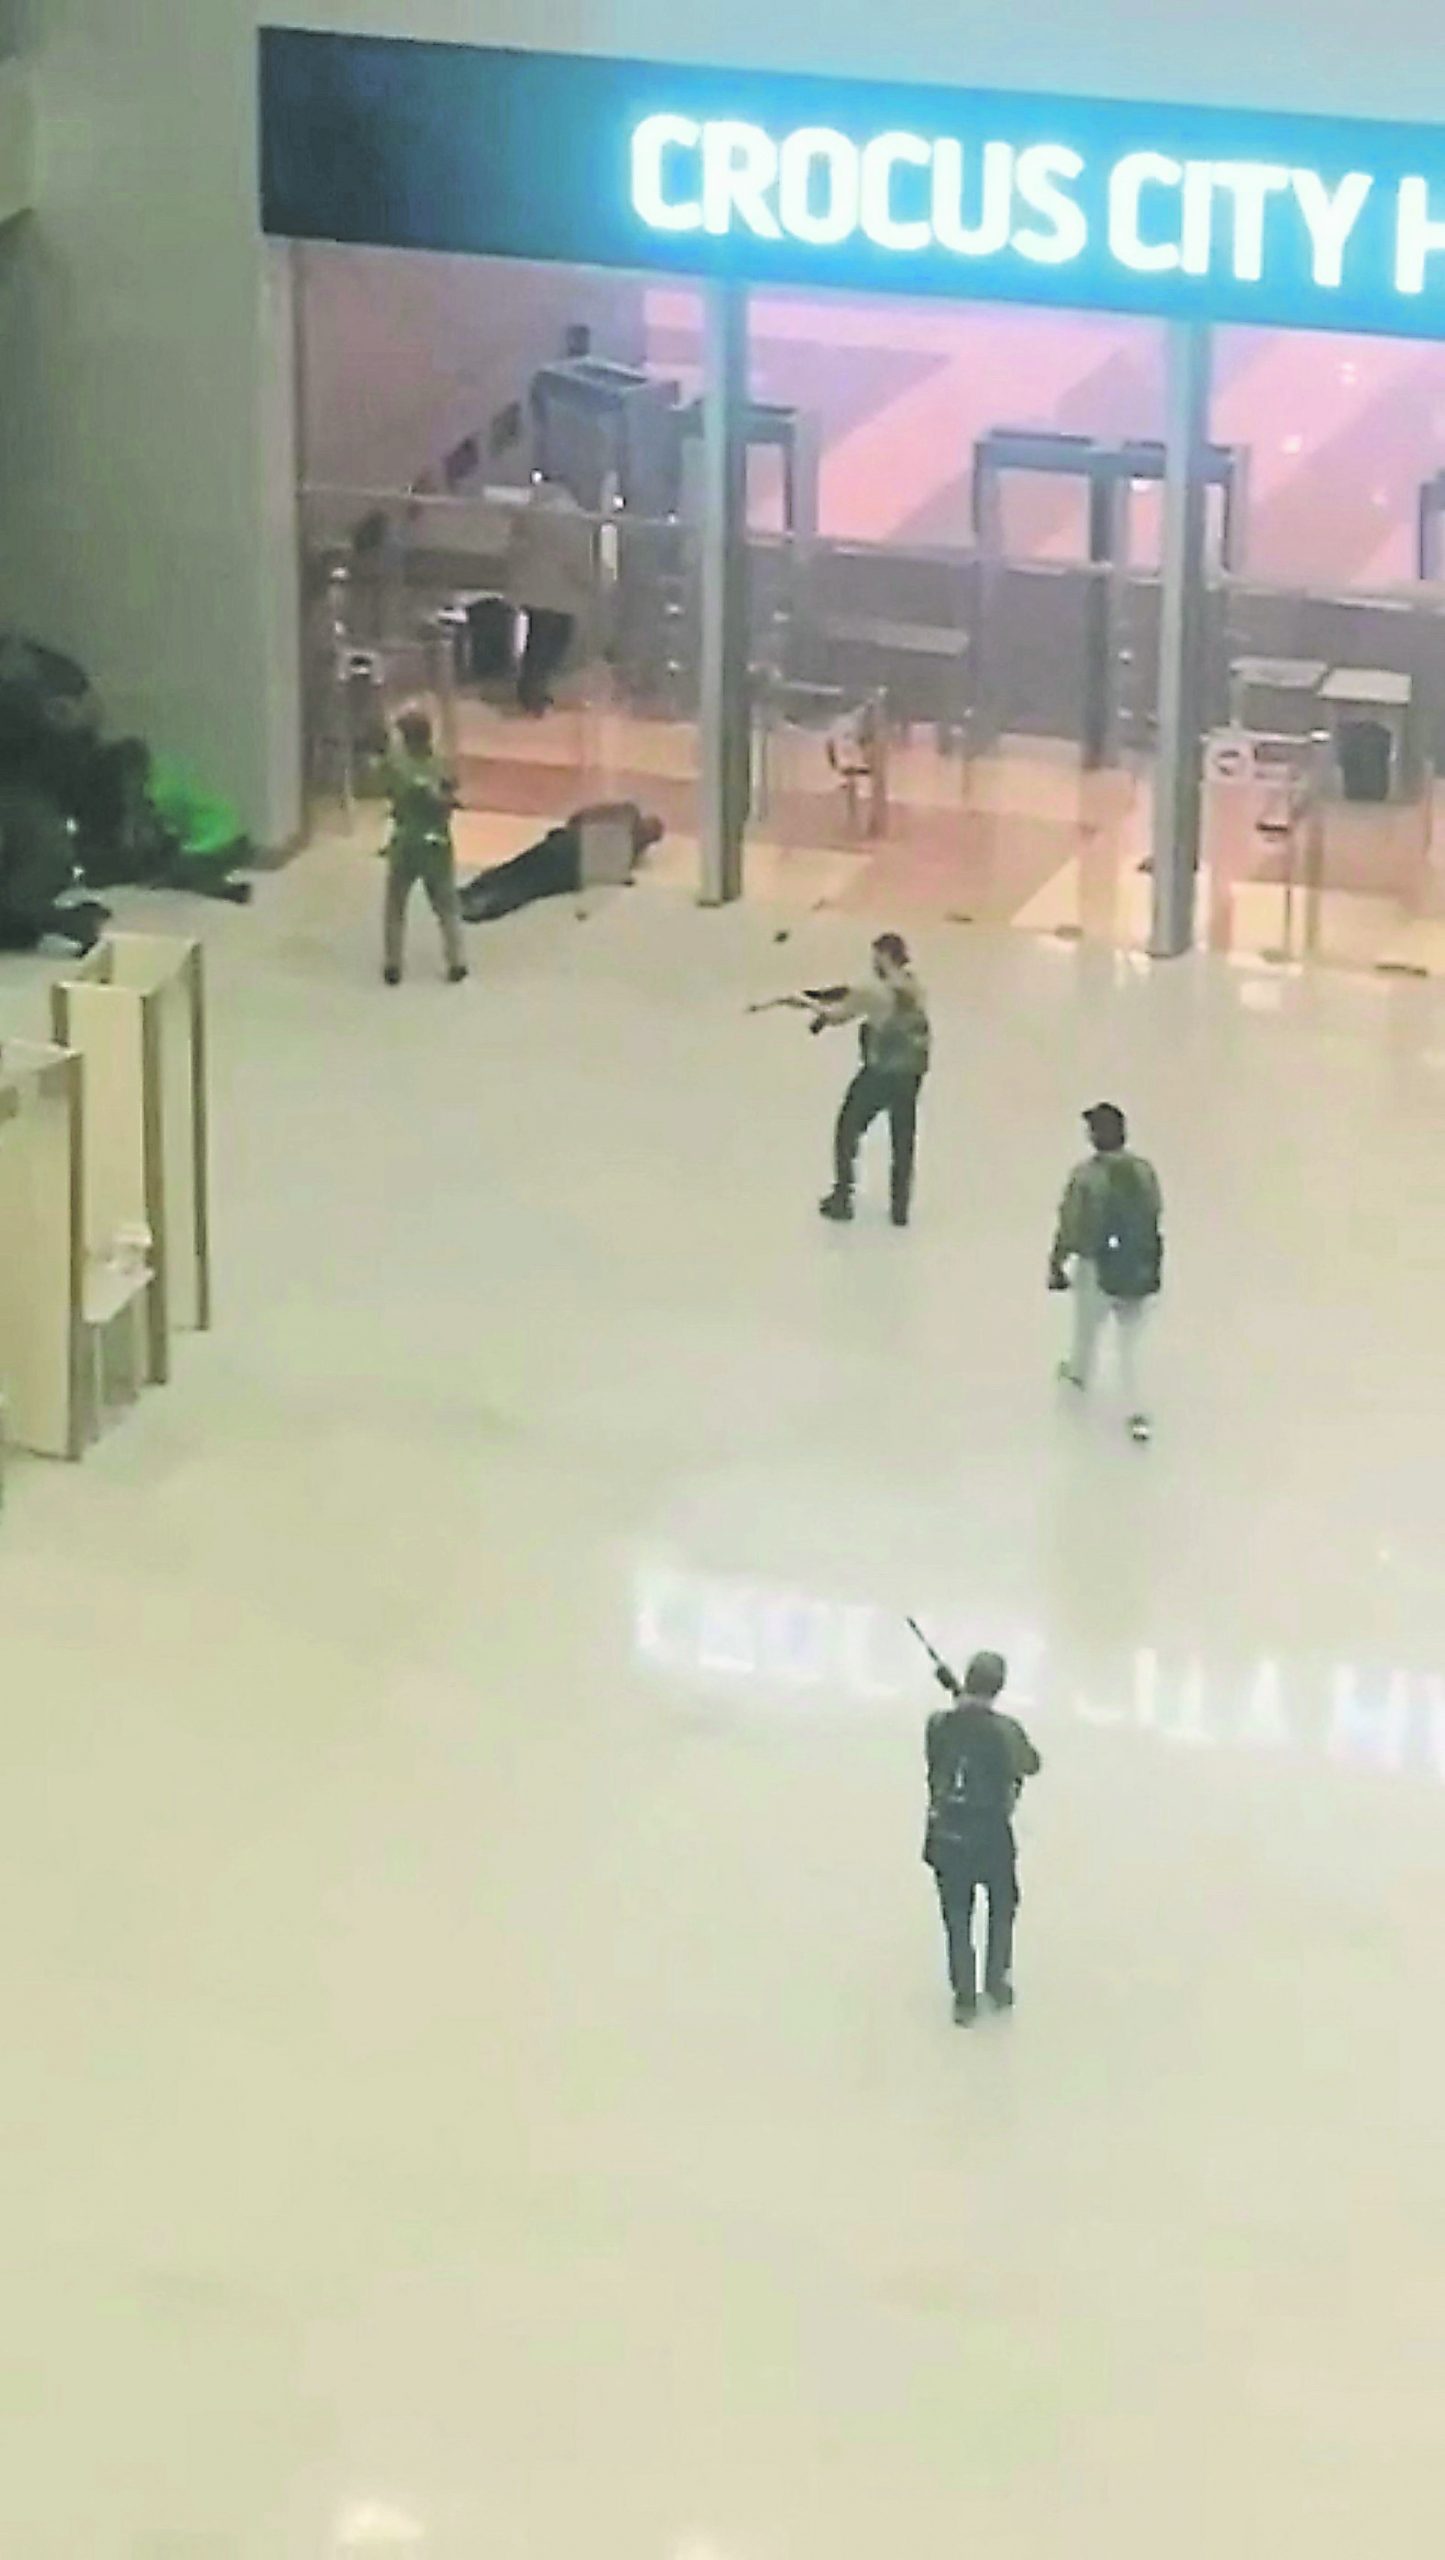 影片截圖可見多名槍手在音樂廳入口掃射。